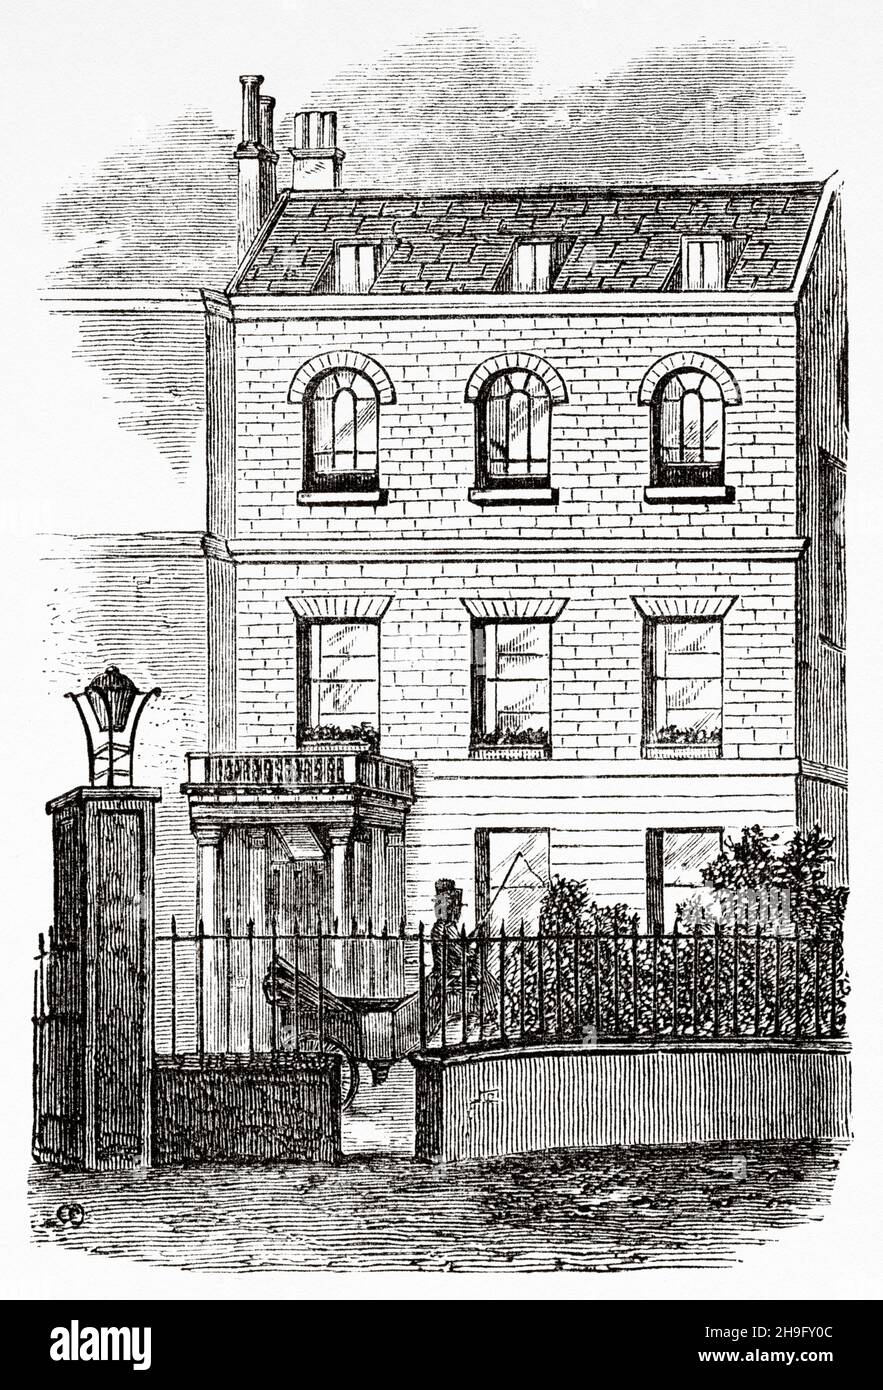 Tavistock House fue el hogar londinense de Charles Dickens y su familia de 1851 a 1860. En Tavistock House Dickens escribió Bak House, Hard Times, Little Dorrit y Un cuento de dos ciudades. Ilustración de la novela de Charles Dickens Little Dorrit de Hablot Knight Browne (1815-1882) Artista inglés conocido como Phiz Foto de stock